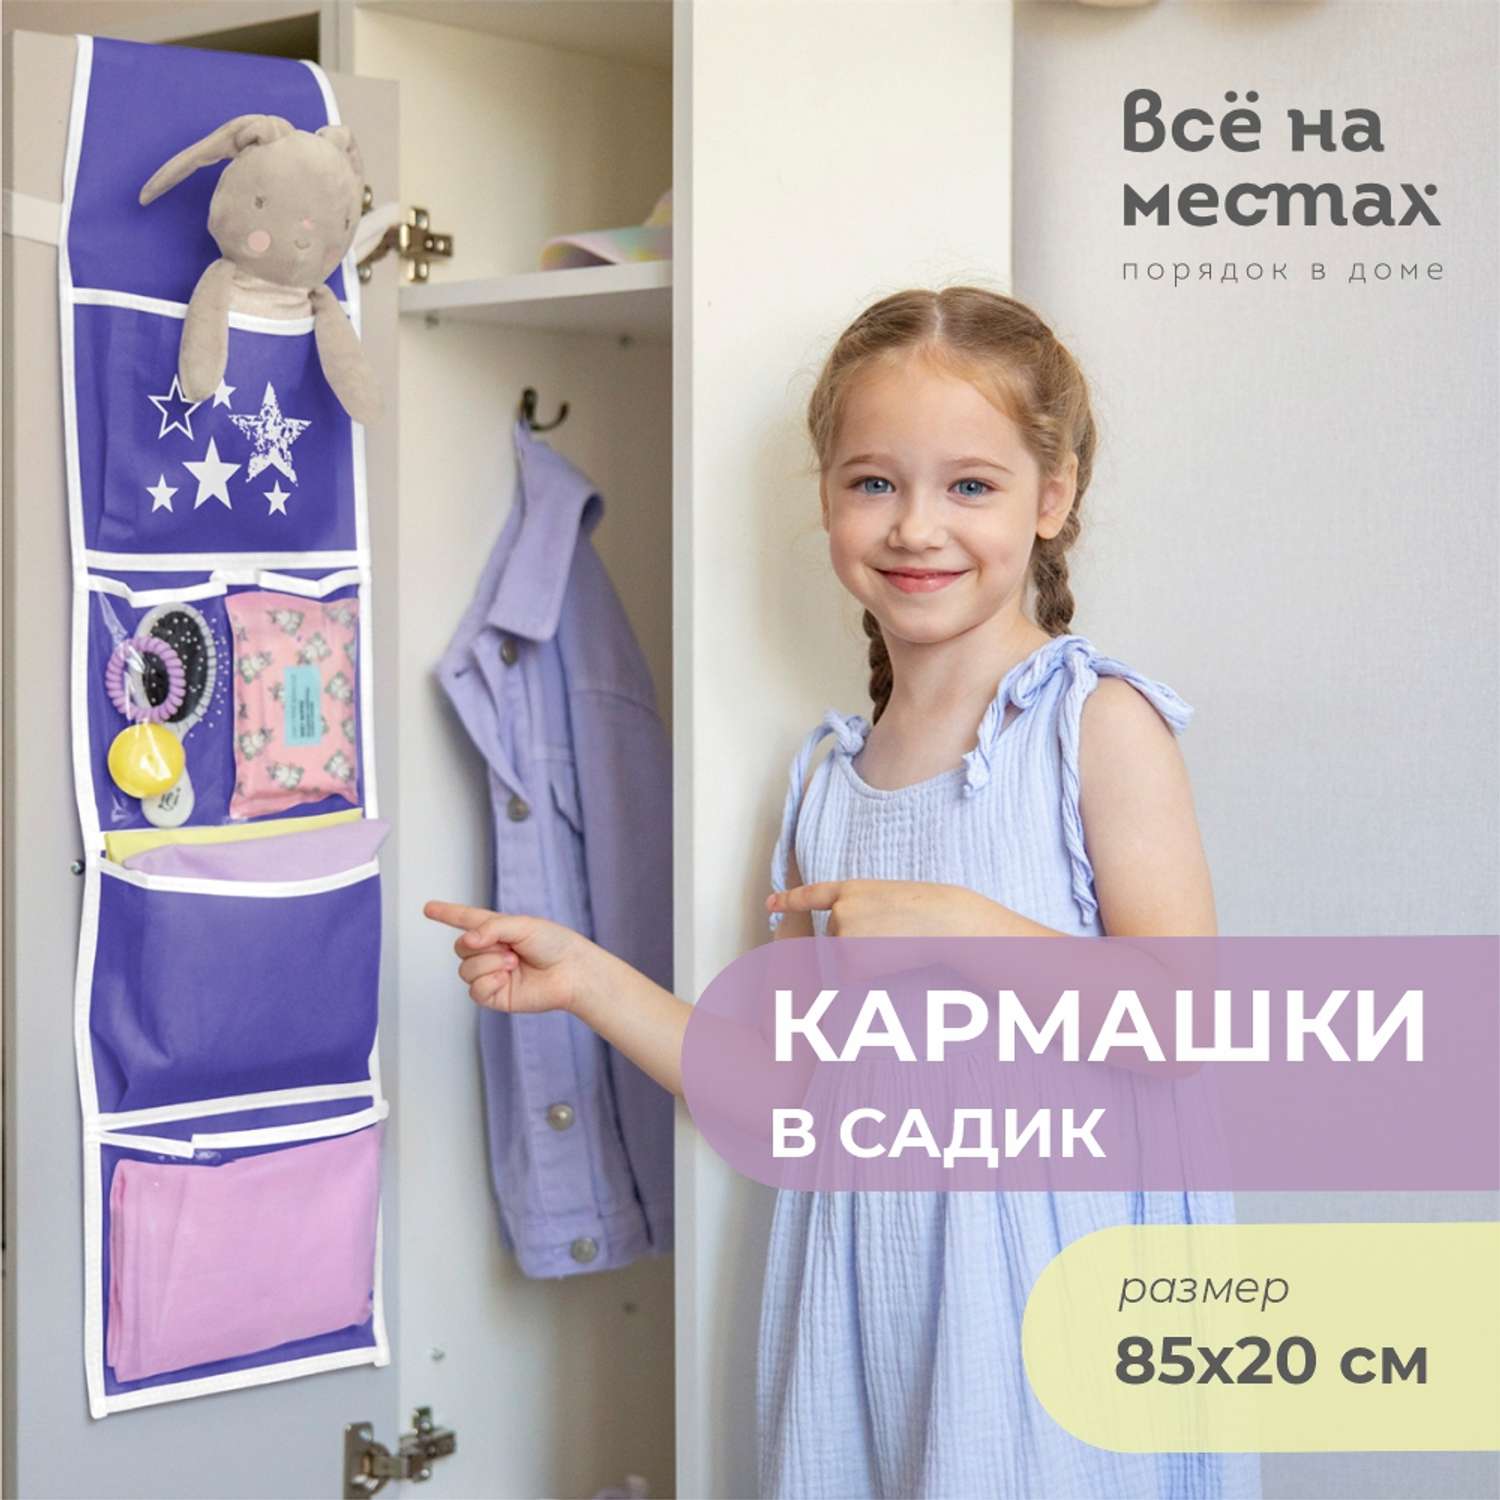 Кармашки в шкафчик для детского сада - купить недорого в интернет-магазине ВОТОНЯ